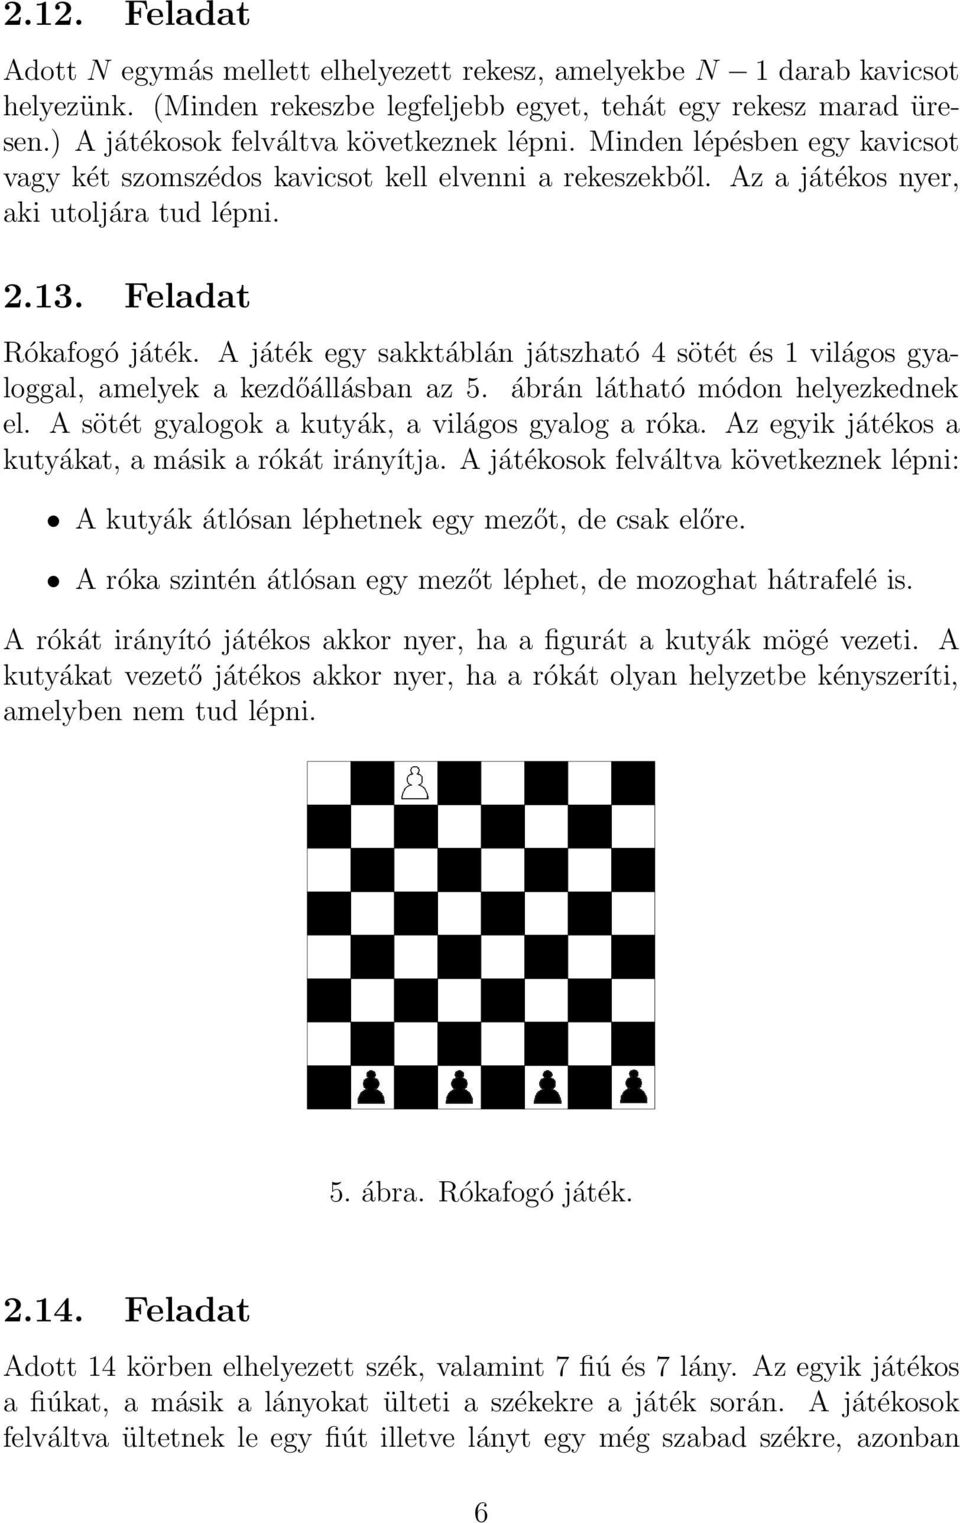 Feladat Rókafogó játék. A játék egy sakktáblán játszható 4 sötét és 1 világos gyaloggal, amelyek a kezdőállásban az 5. ábrán látható módon helyezkednek el.